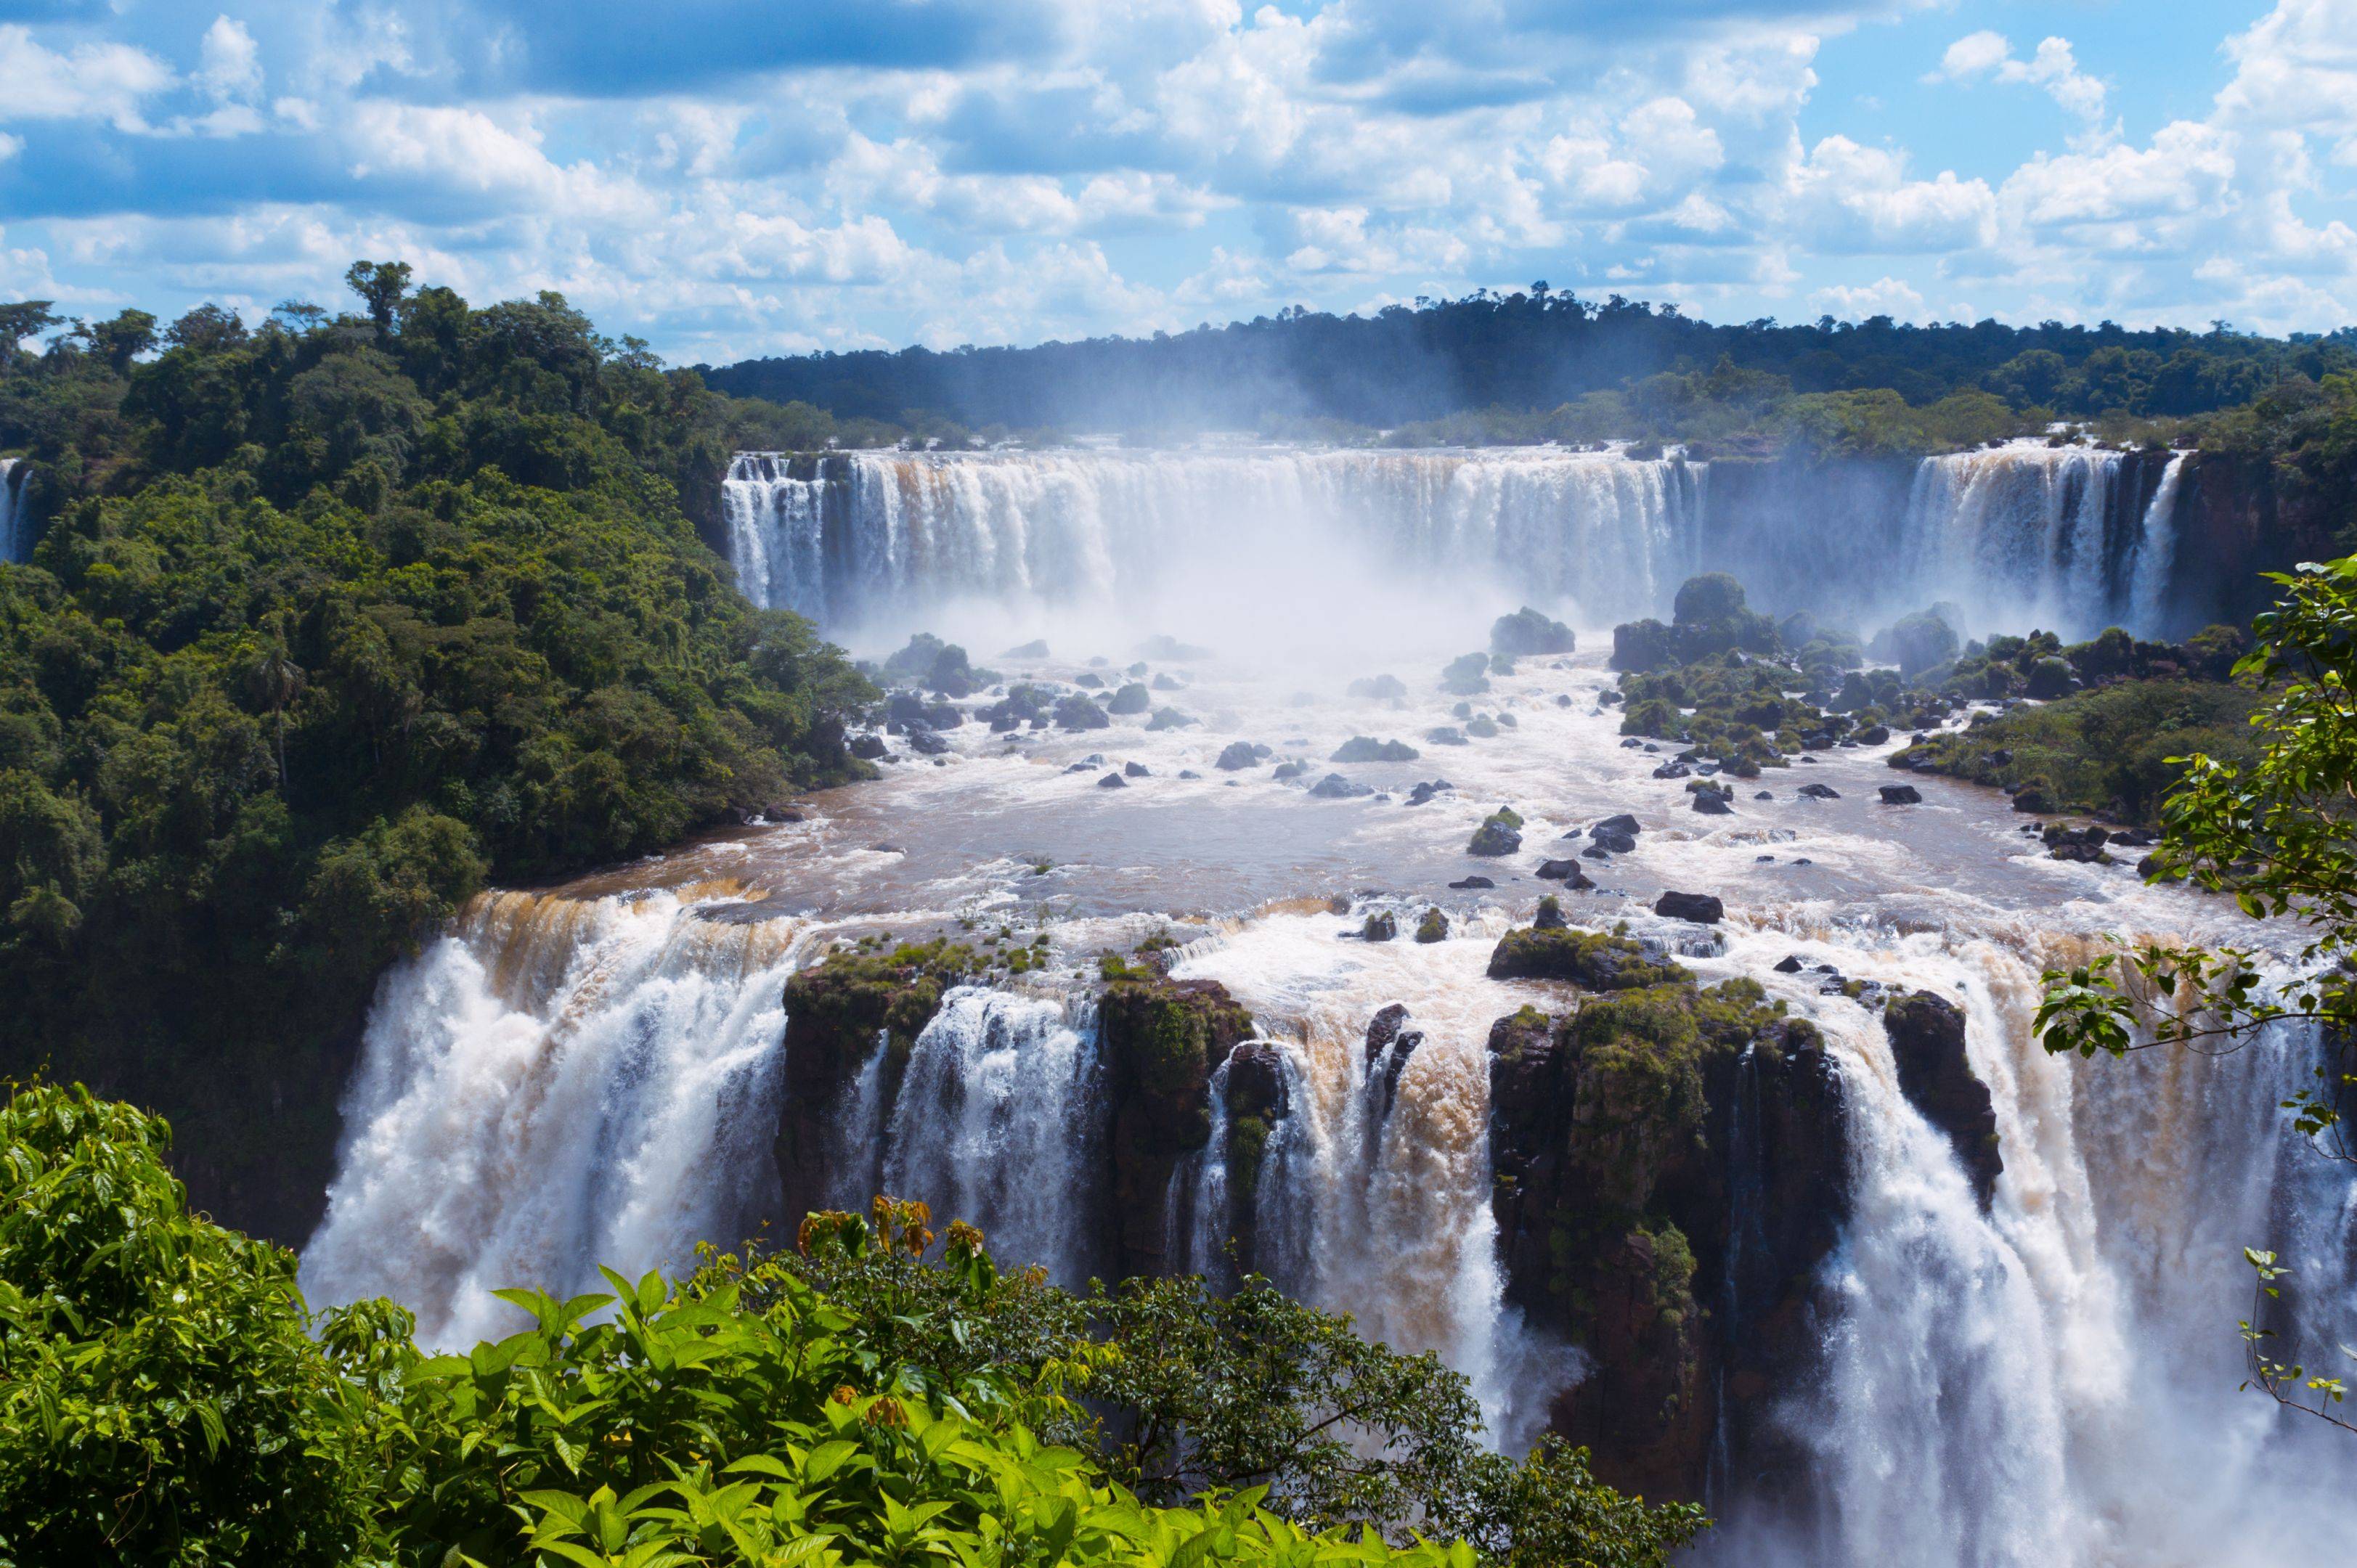 Otro ángulo del bello Iguazú